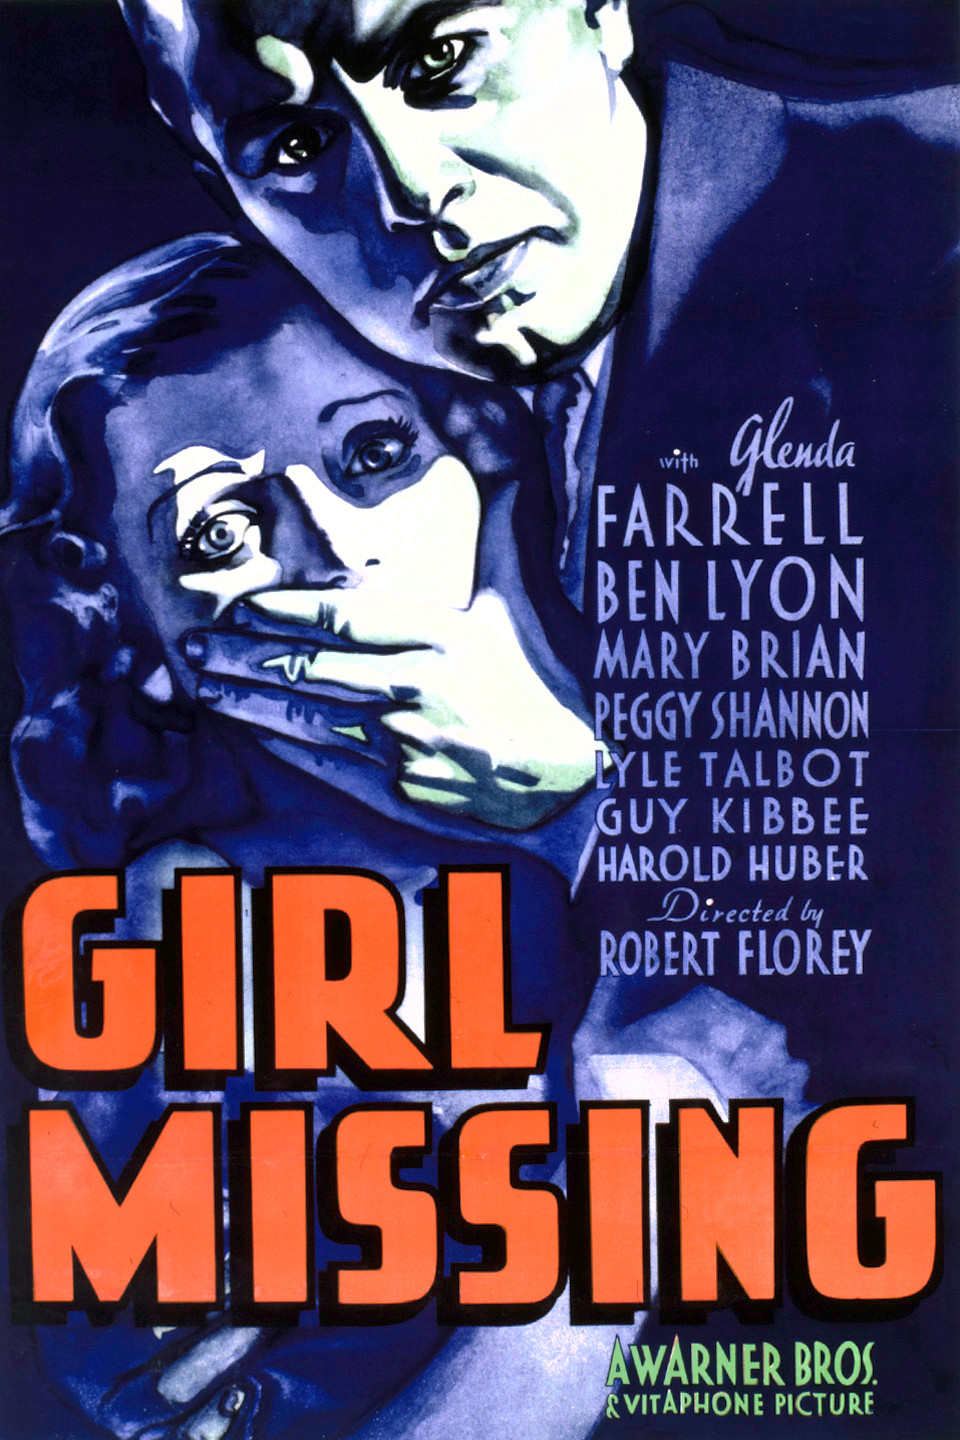 Glenda Farrell در صحنه فیلم سینمایی Girl Missing به همراه Ben Lyon